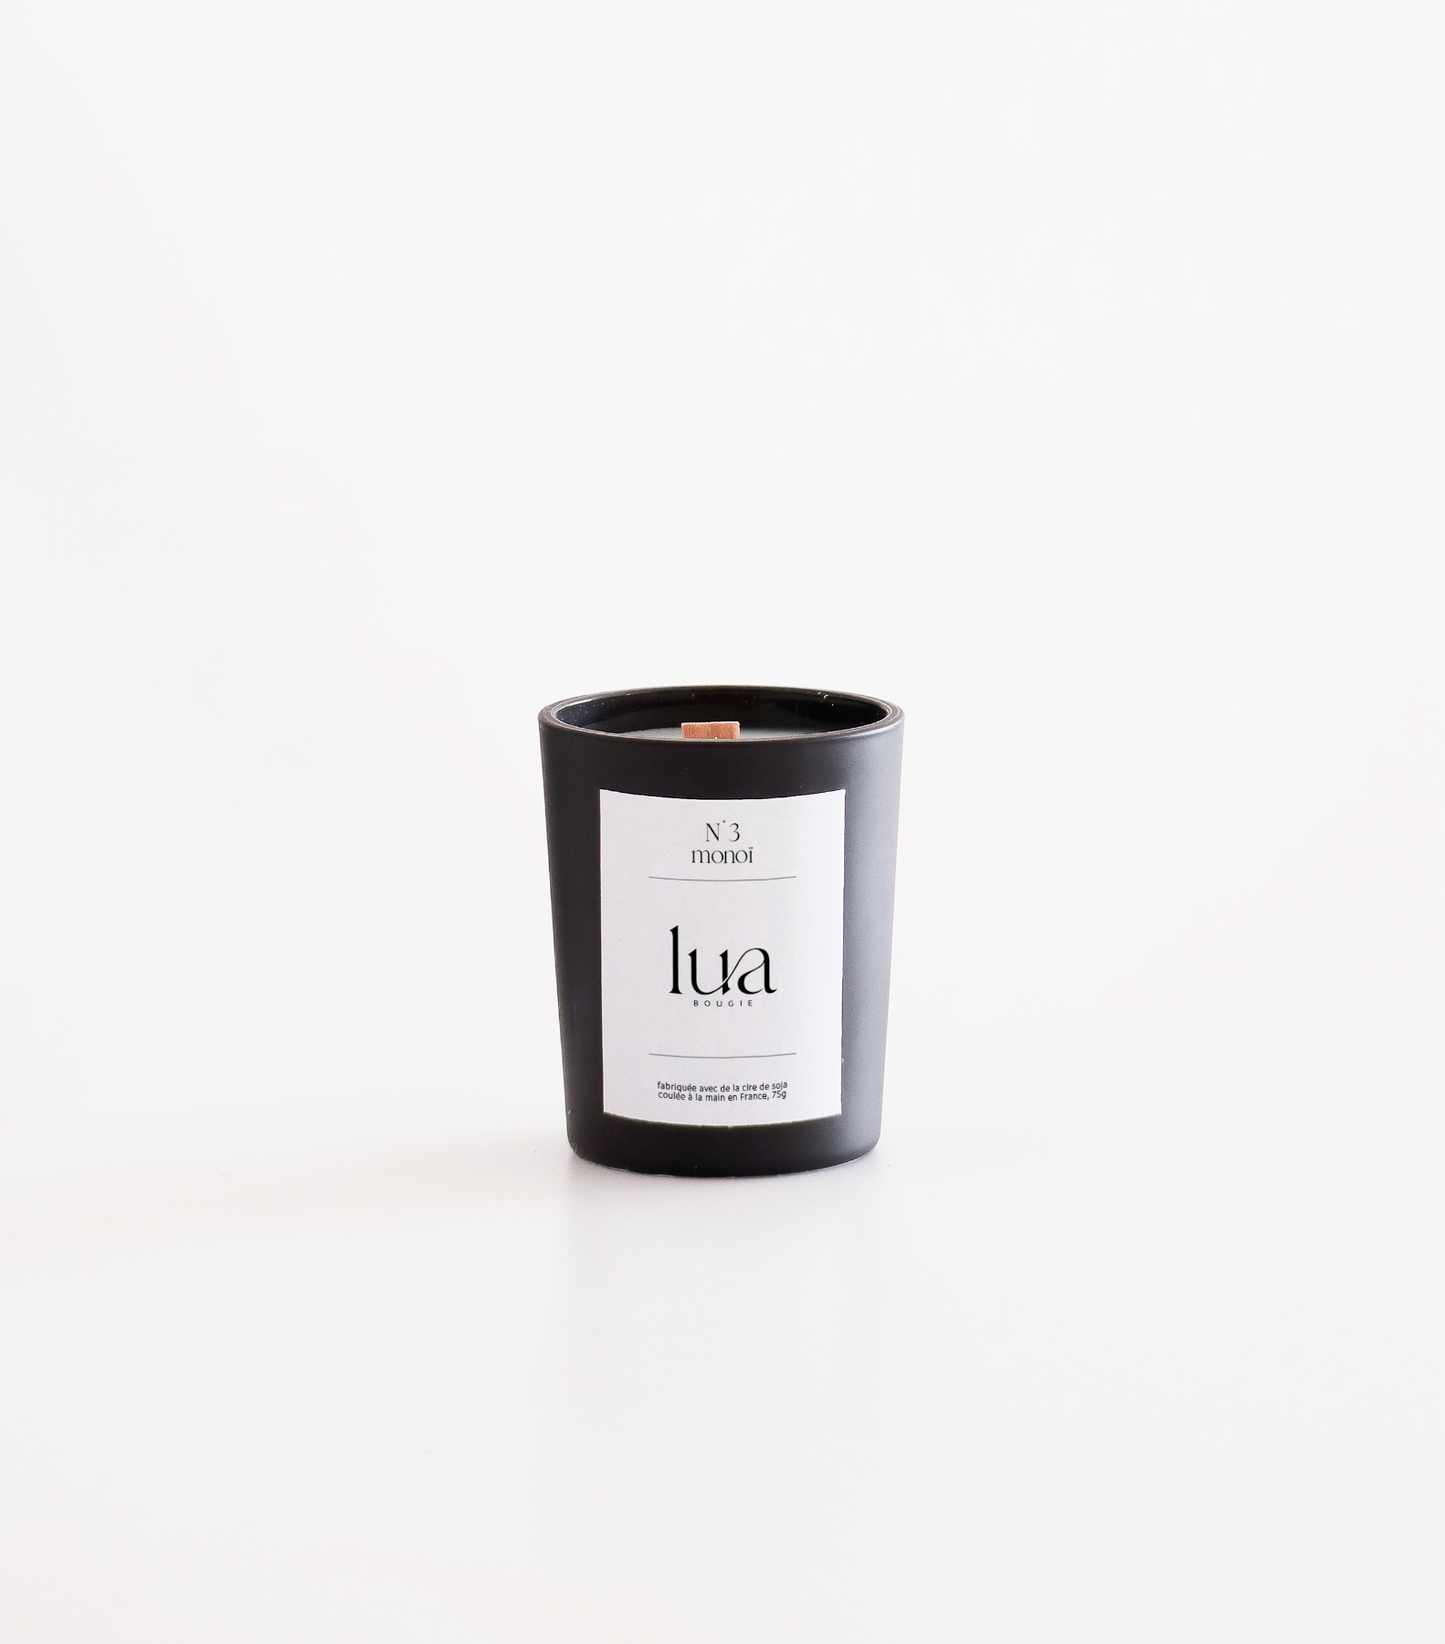 Bougie Lua personnalisables et rechargeables, parfums monoï, contenant noir 75g. 